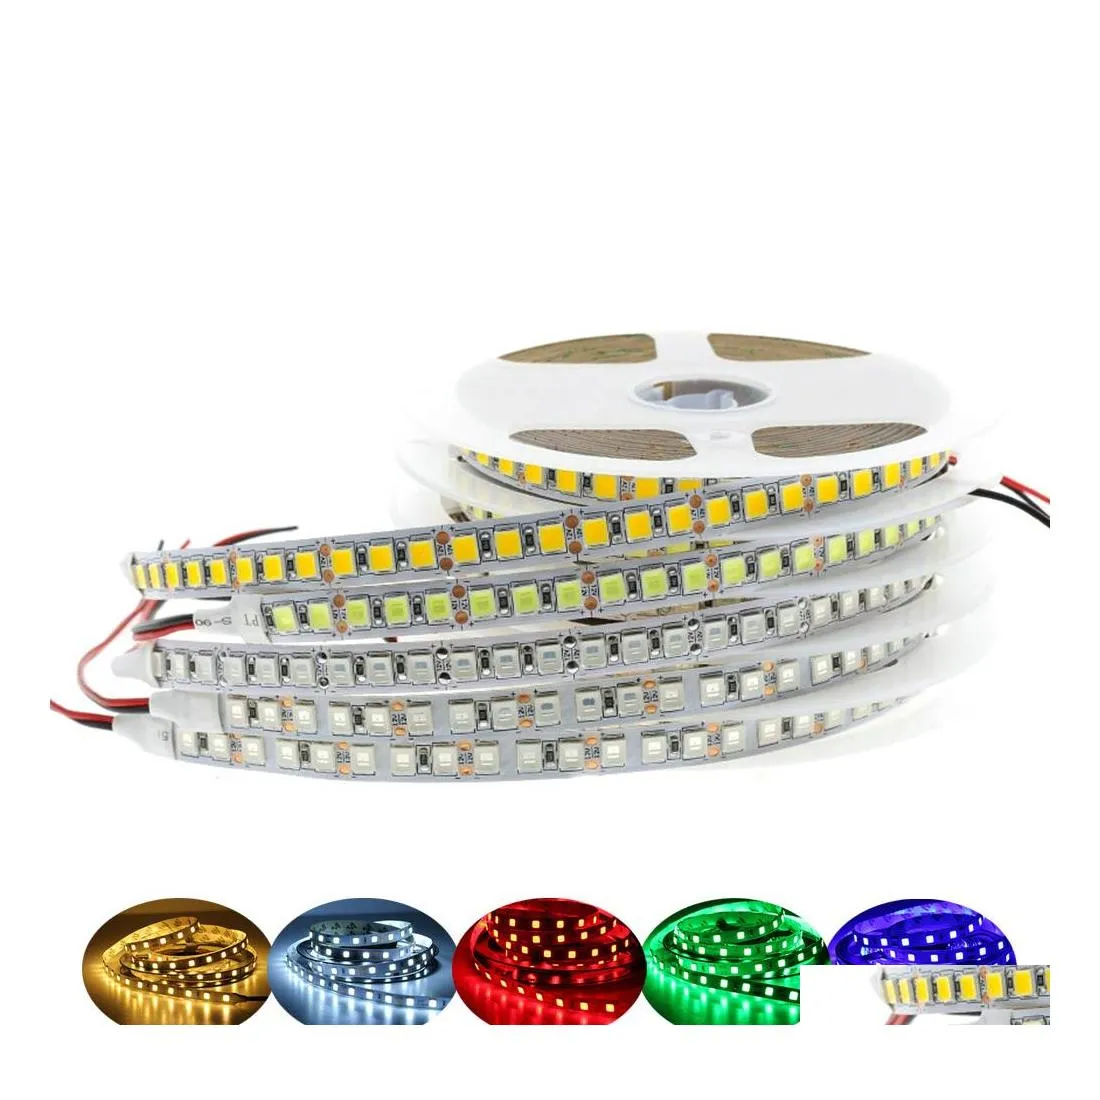 Strisce LED Dc12V Strip Light 5054 Nastro flessibile impermeabile 60 LED/M 120 LED/M Più luminoso di 5050 3528 Nastro diodo Rgb 12 V 5 M/lotto Dr Dheya